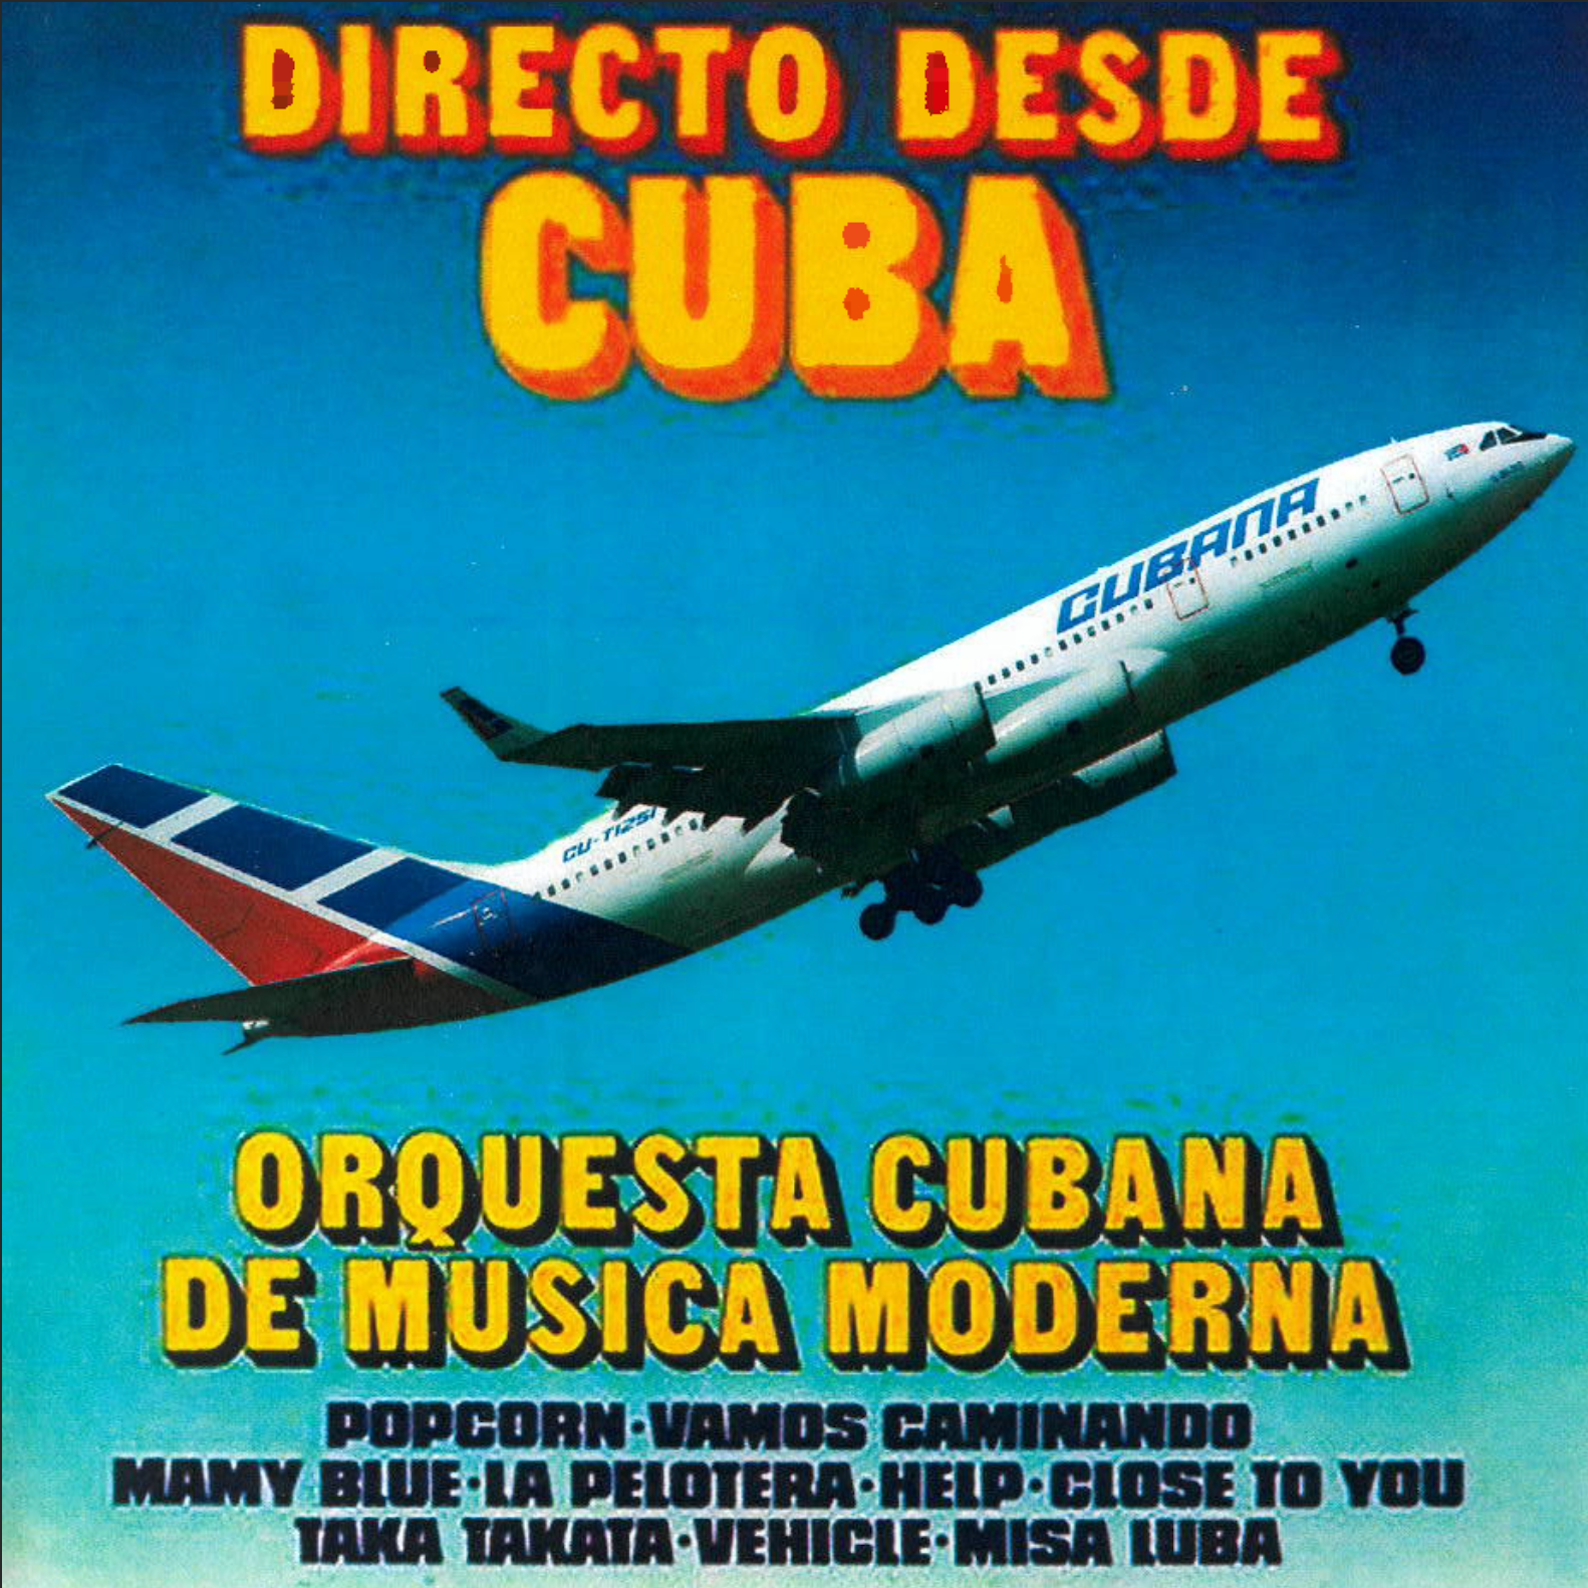 Orquesta Cubana de Música Moderna - Directo Desde Cuba [Areito